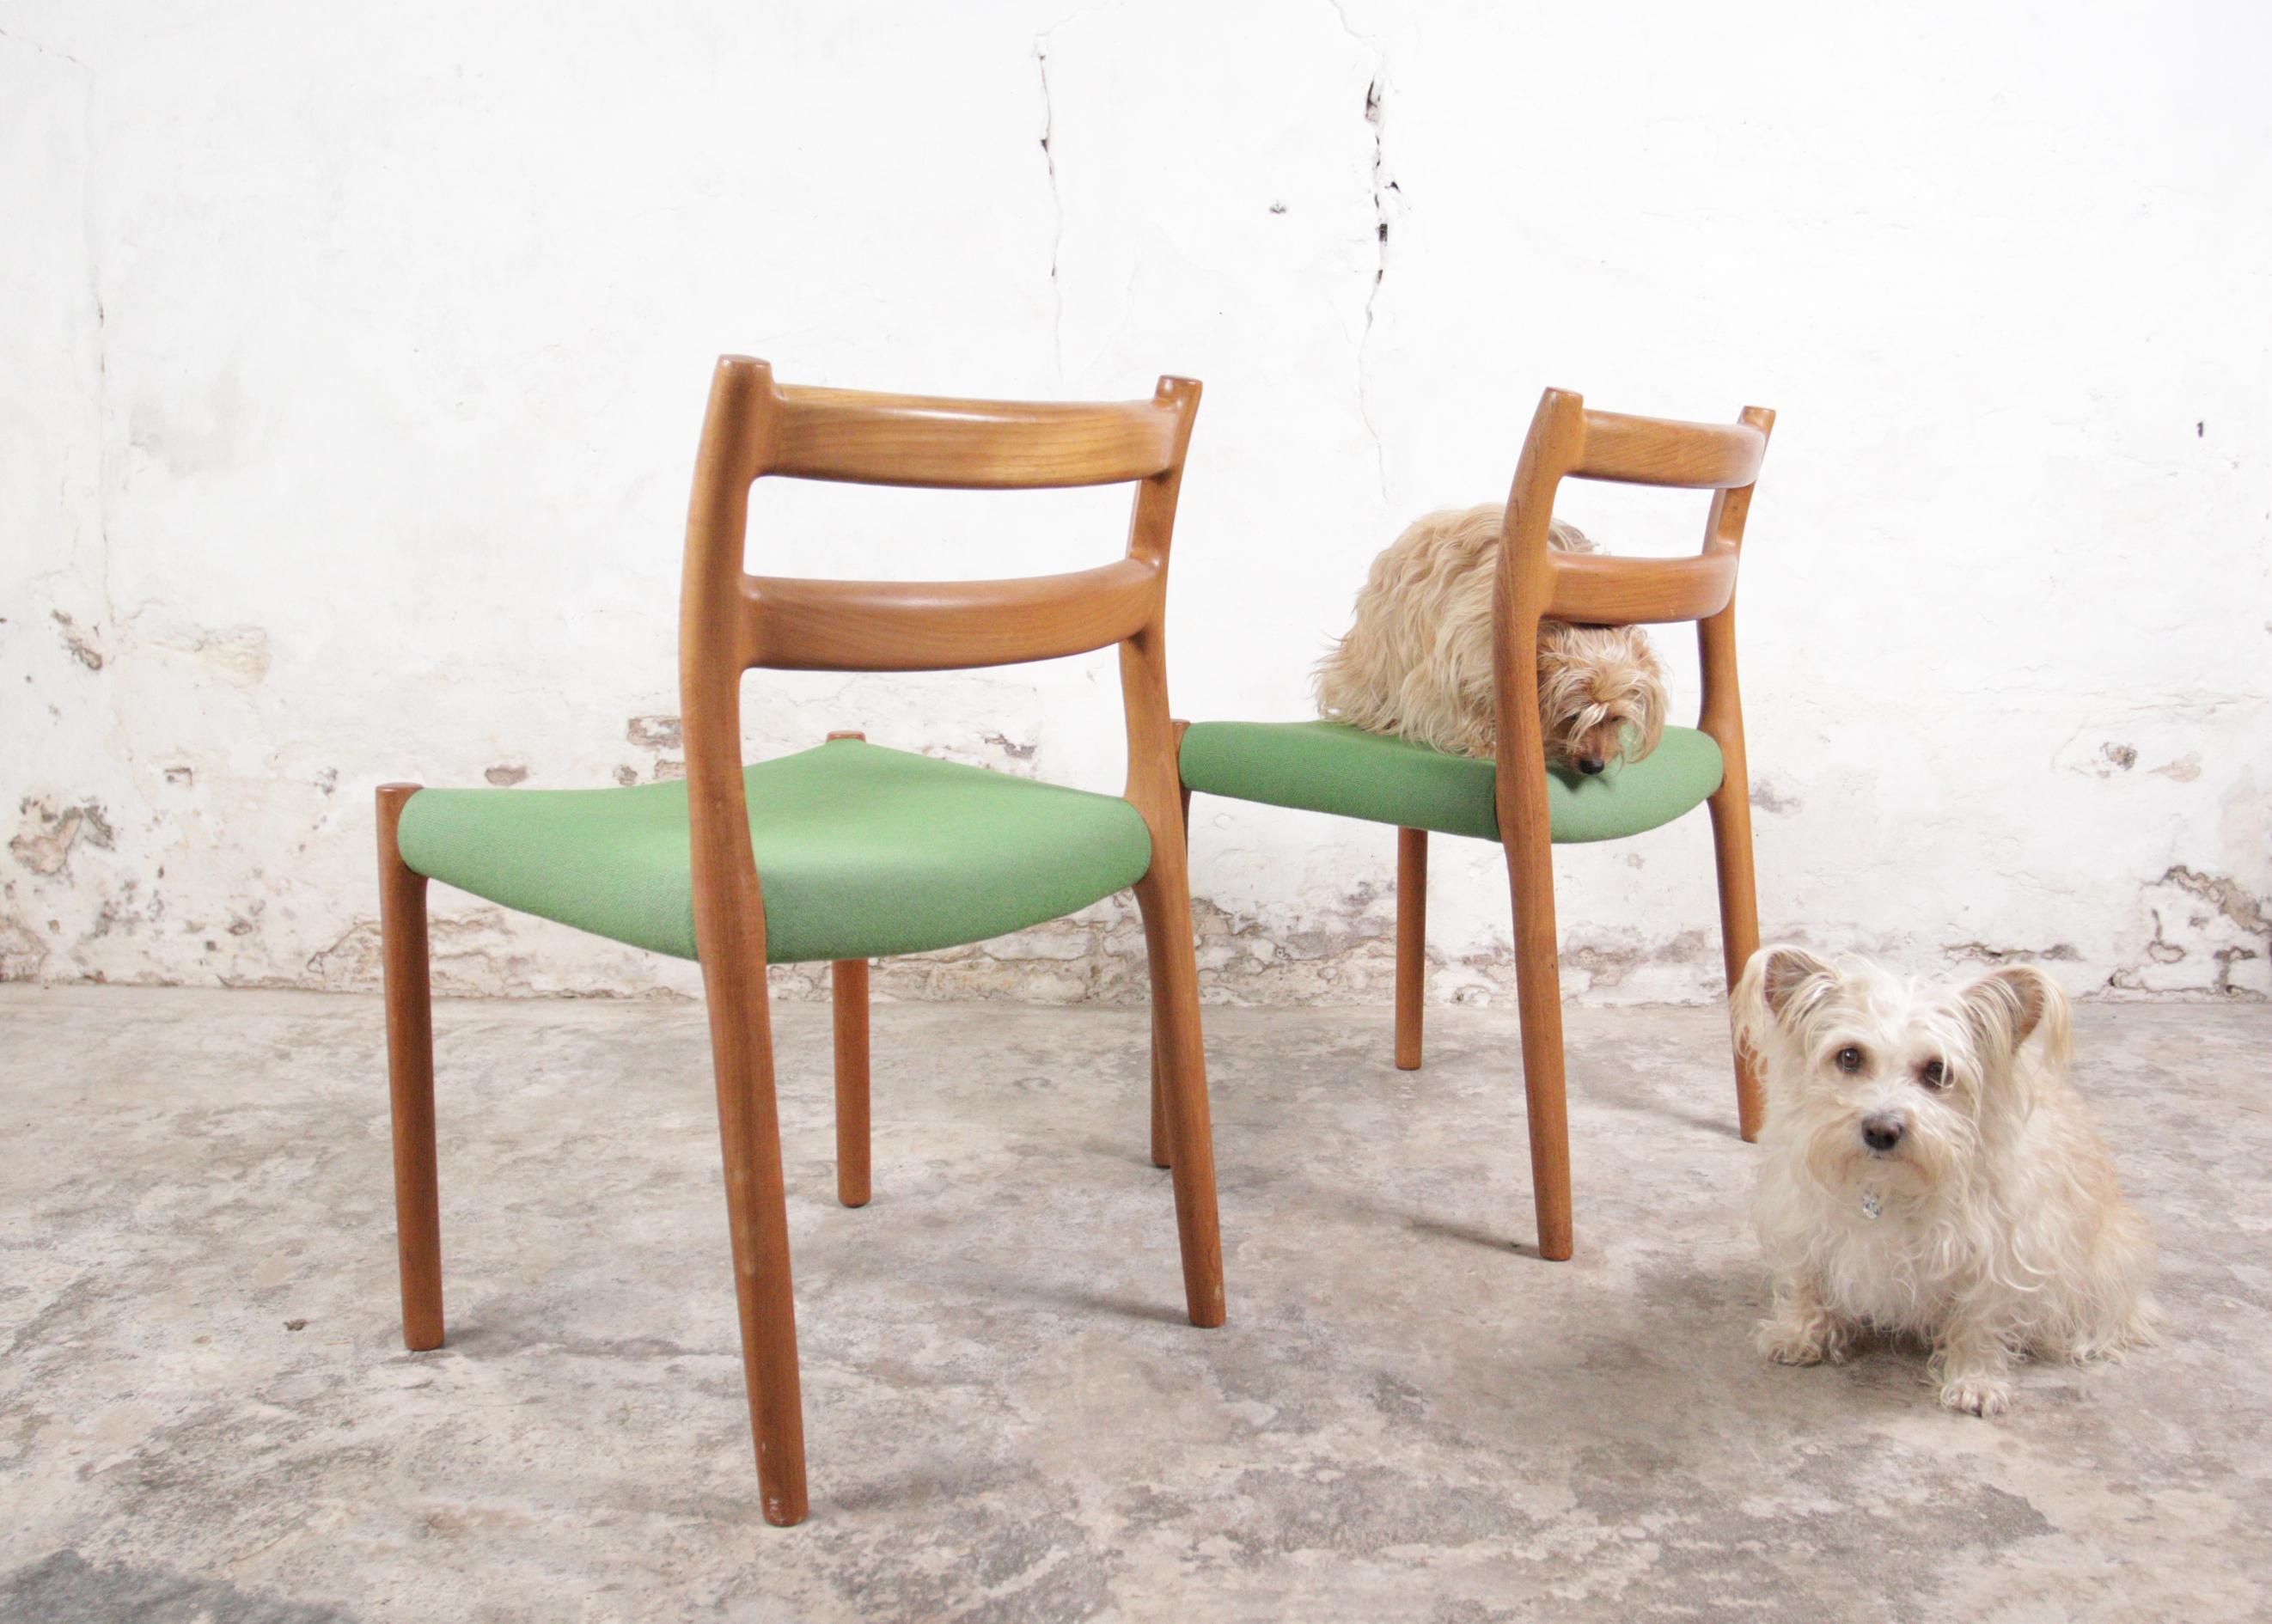 Esszimmerstühle Modell 84, entworfen von Niels O. Møller für J.L. Møllers im Jahr 1976.
Diese Stühle sind aus massivem Teakholz gefertigt und mit dem grünen Originalstoff bezogen.
In sehr schönem Originalzustand, ein winziger Fleck auf dem Stoff,